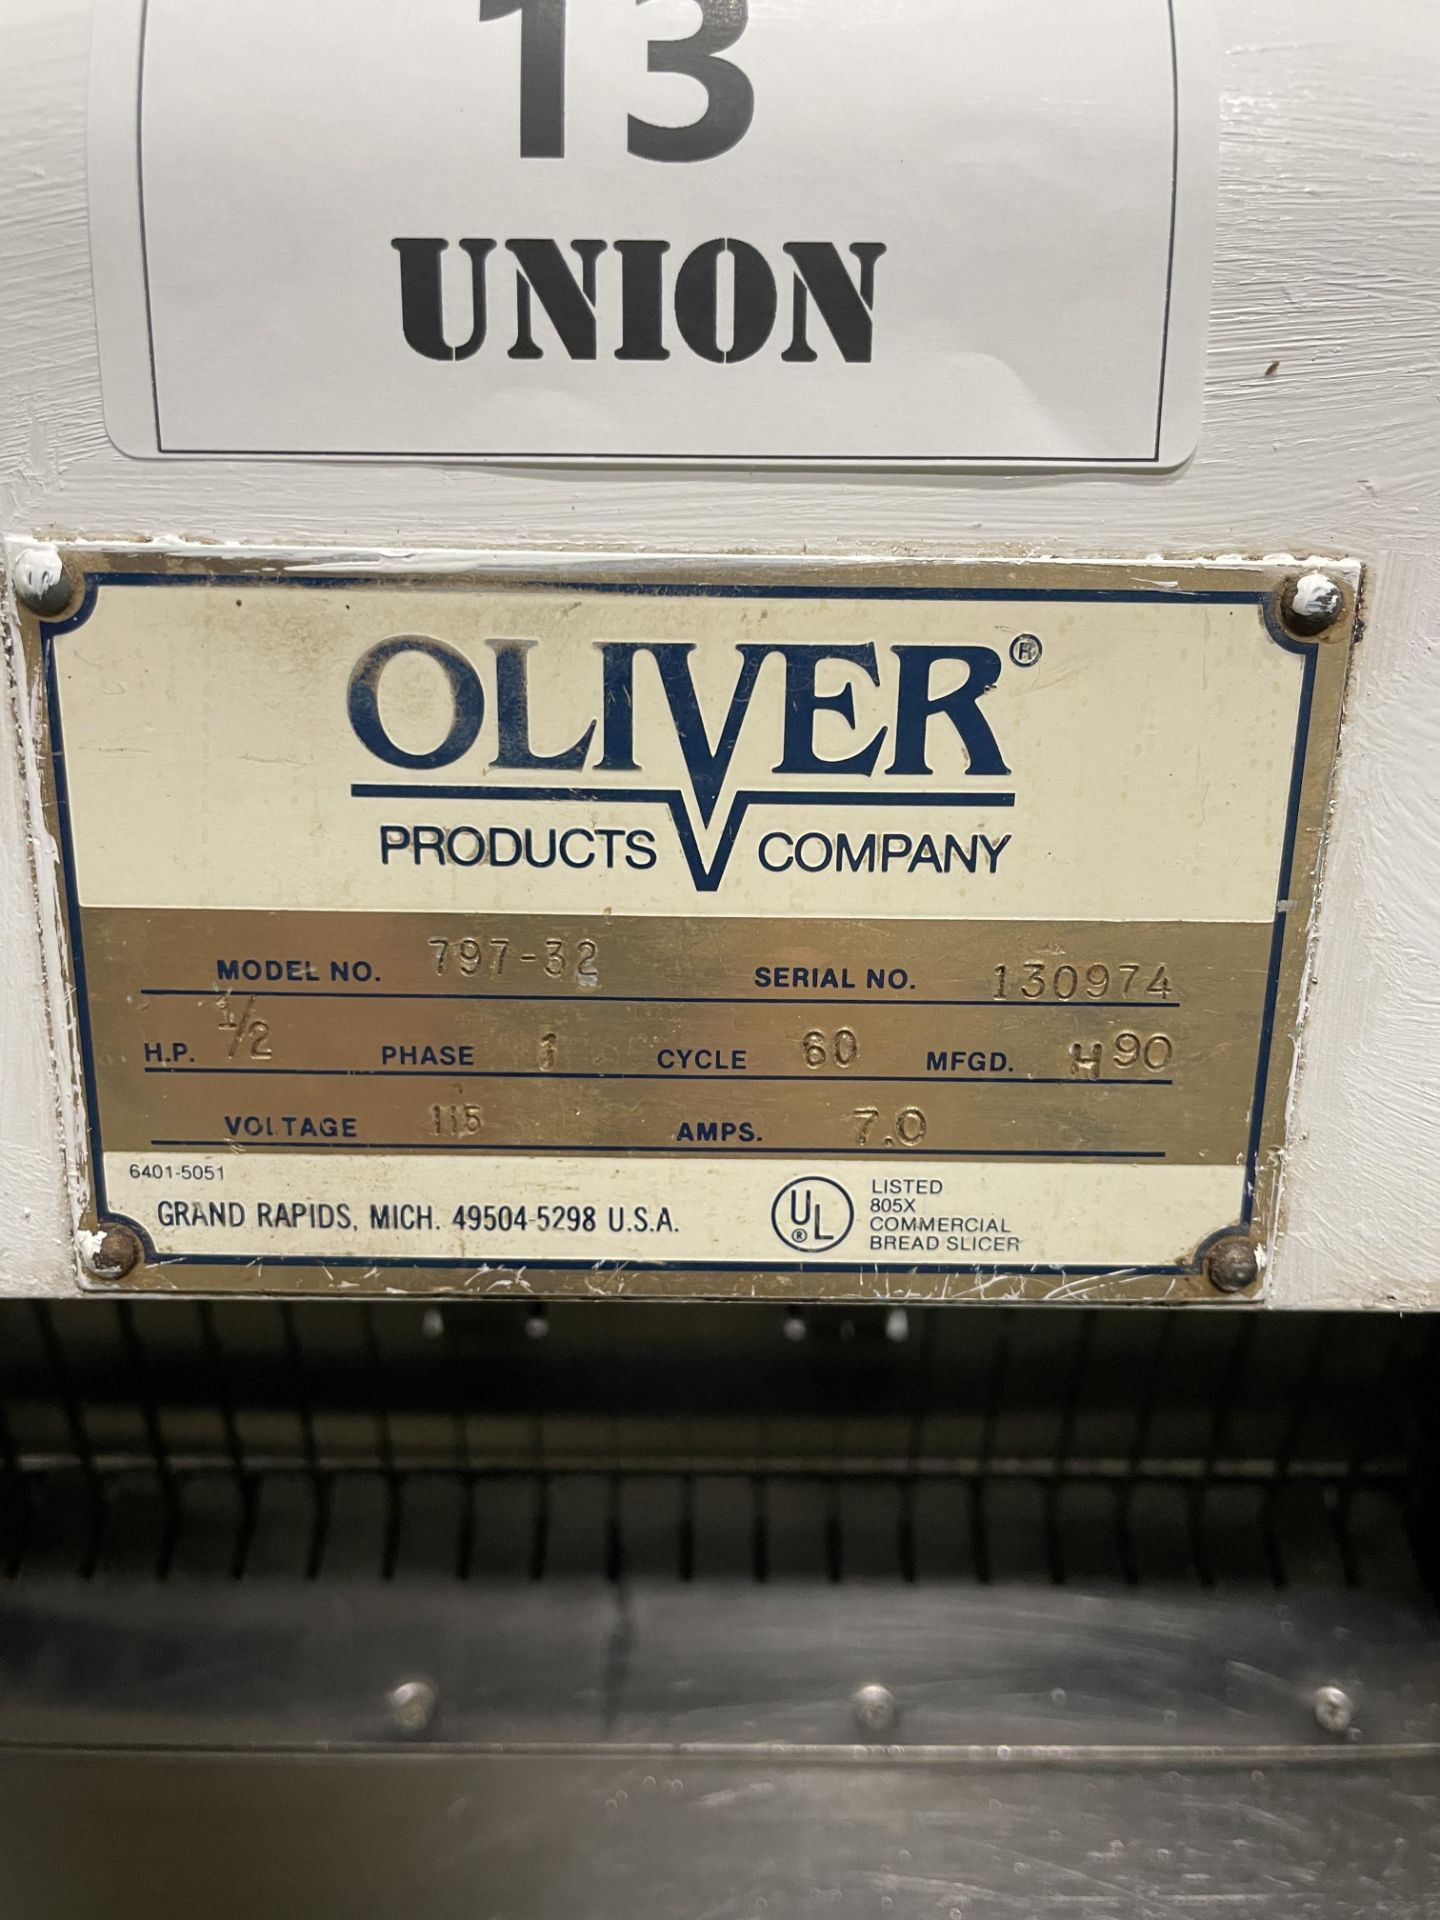 Oliver model 797-32 Bread slicer. (22) Blades on 3/4" centers. 15.5" wide slicer. 1/2 HP, 115 volts. - Image 3 of 6